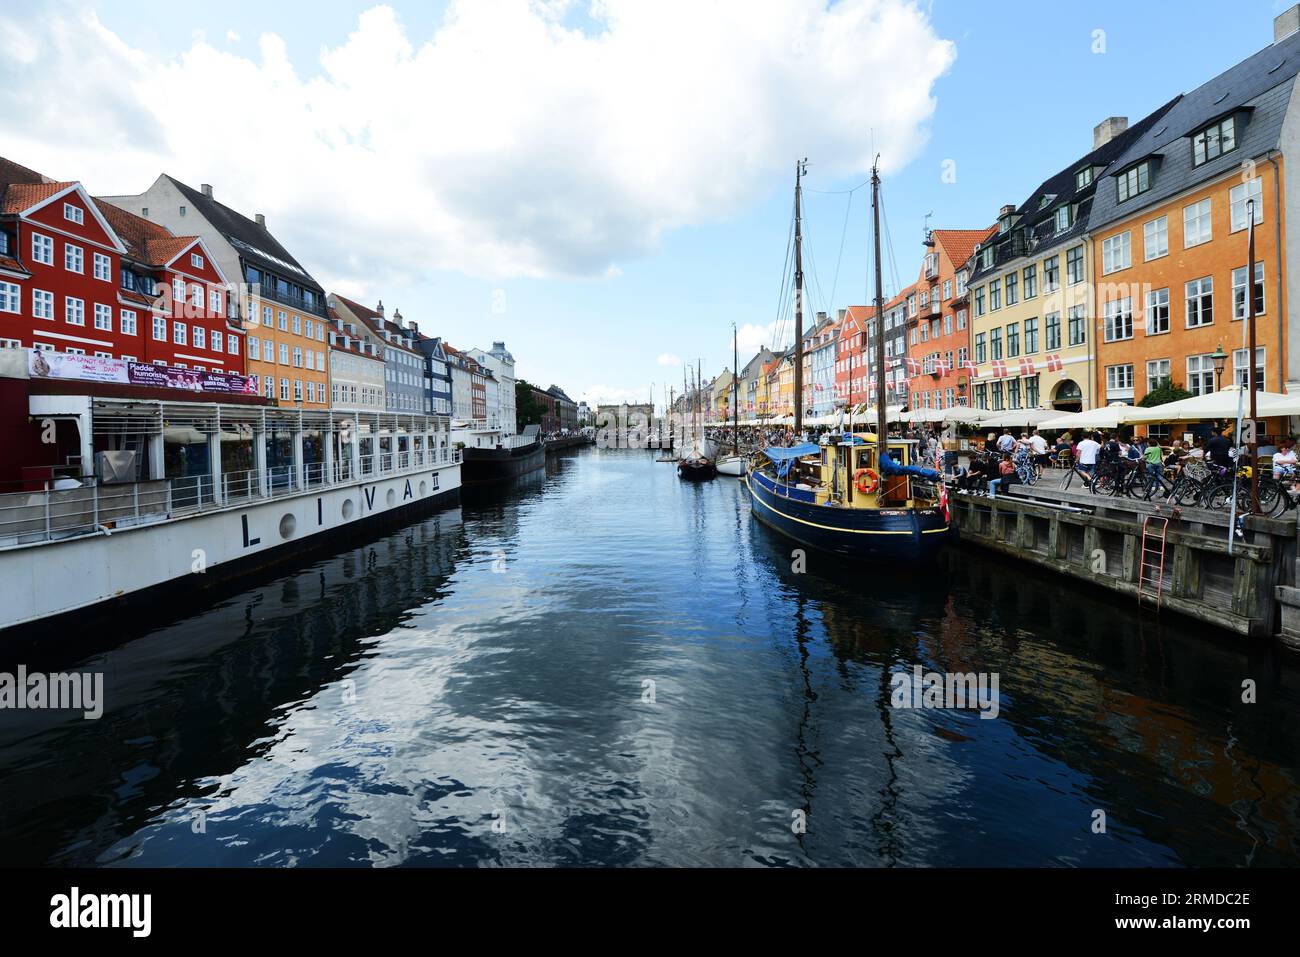 Die wunderschönen 17. Und 18. Farbenfrohen Gebäude entlang des Nyhavn-Kanals in Kopenhagen, Dänemark. Stockfoto